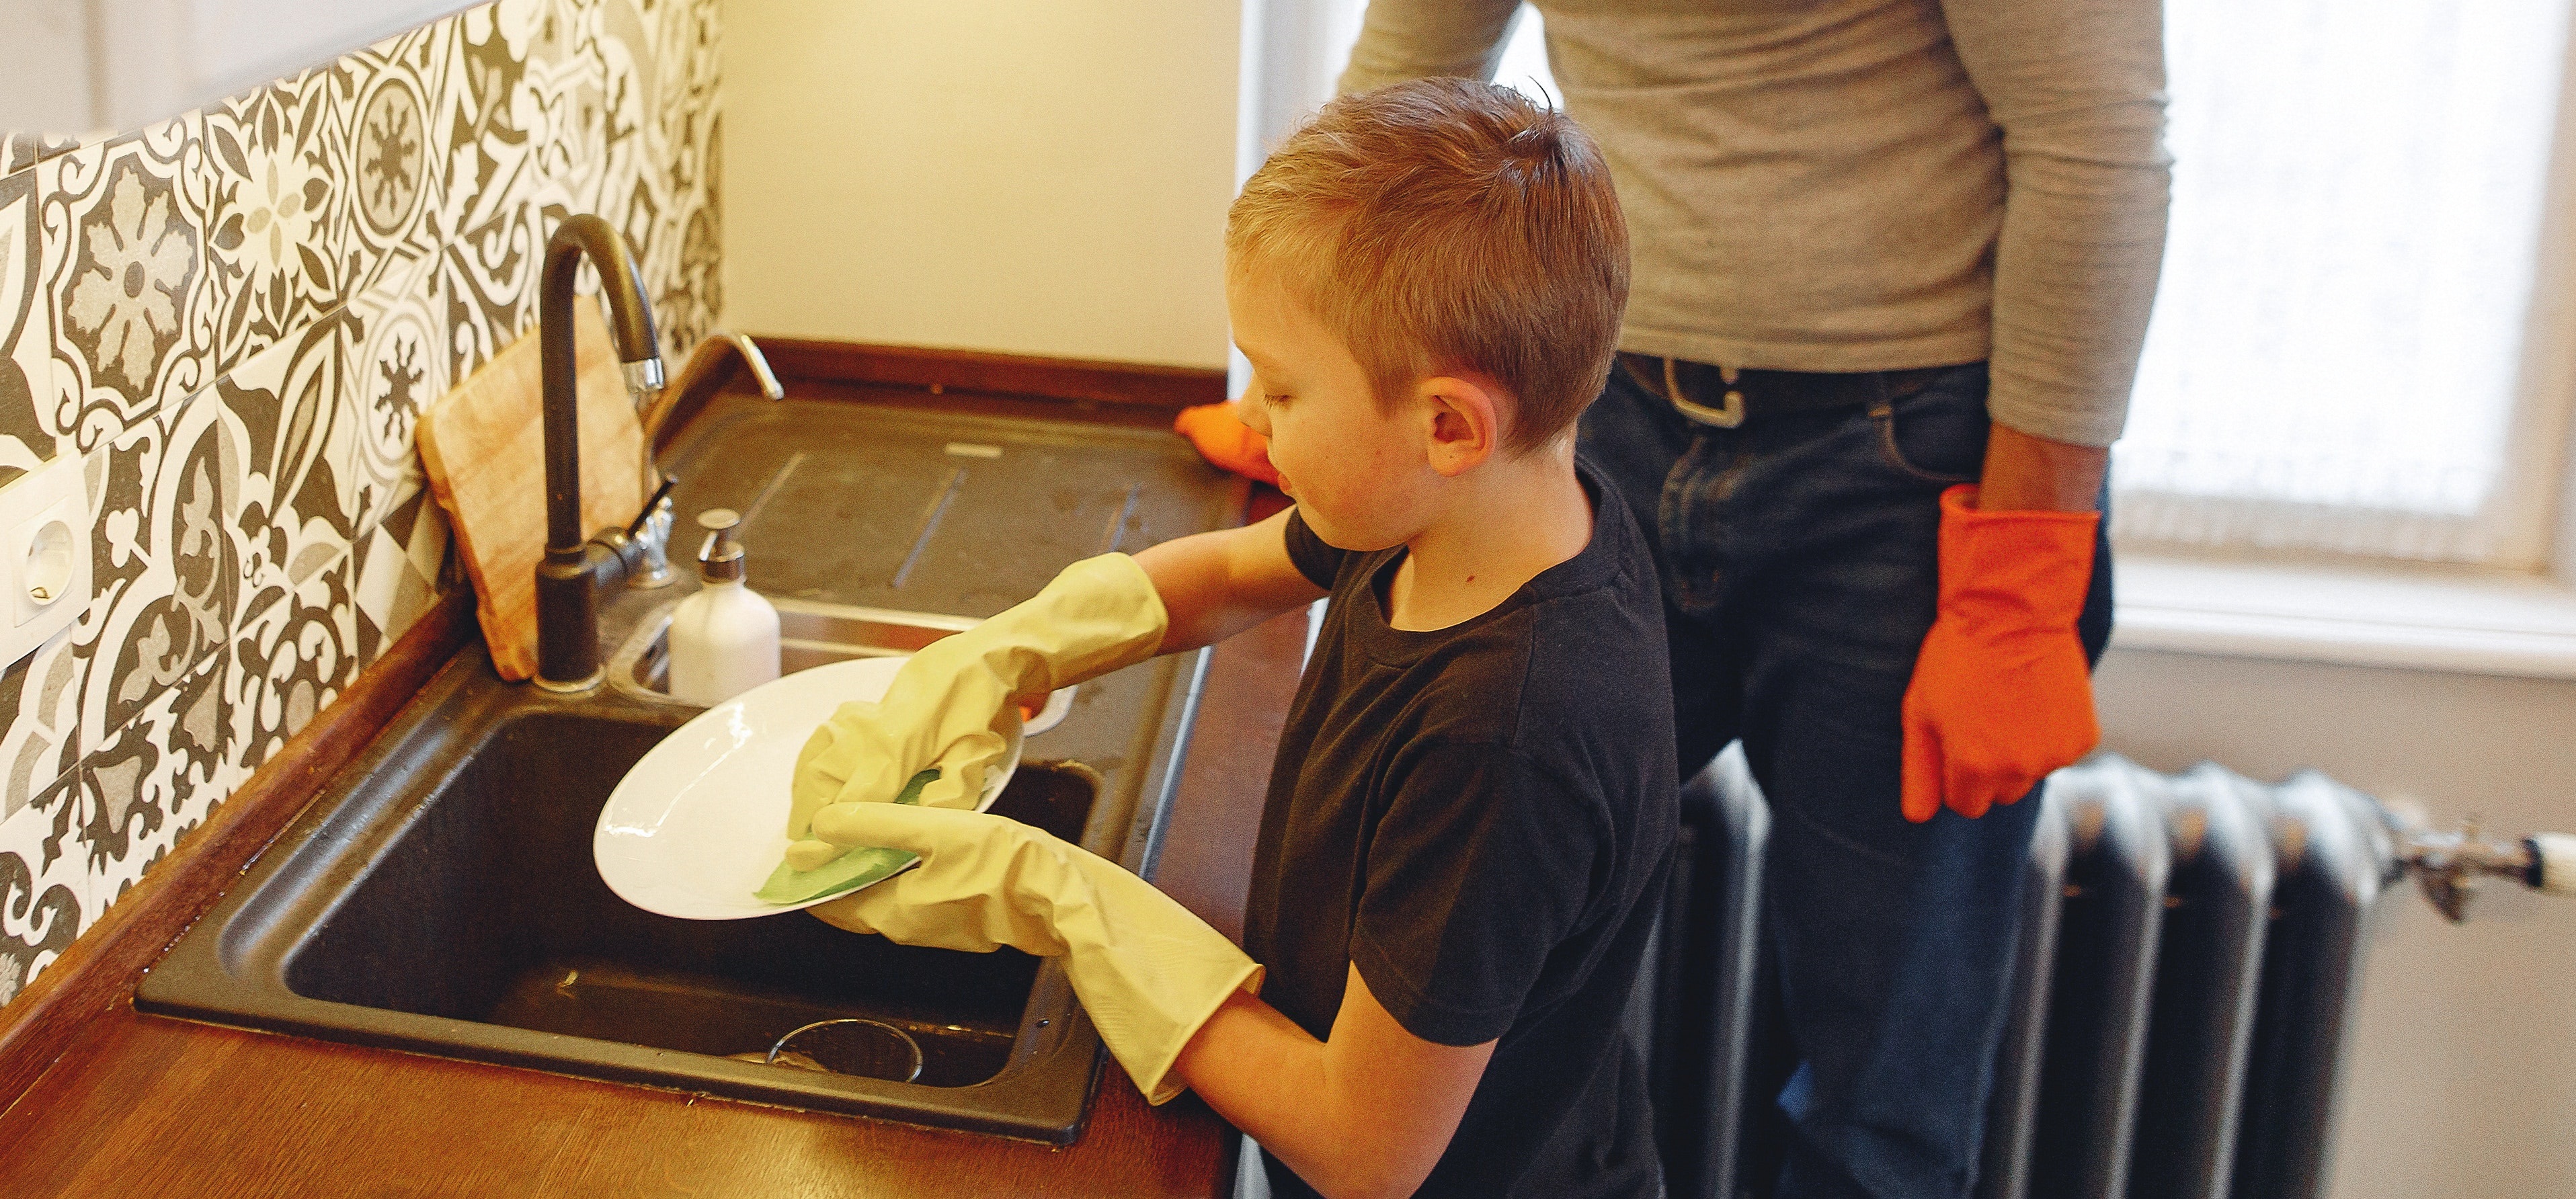 Por qué es importante incluir a los niños en las tareas del hogar: expertos revelan los beneficios